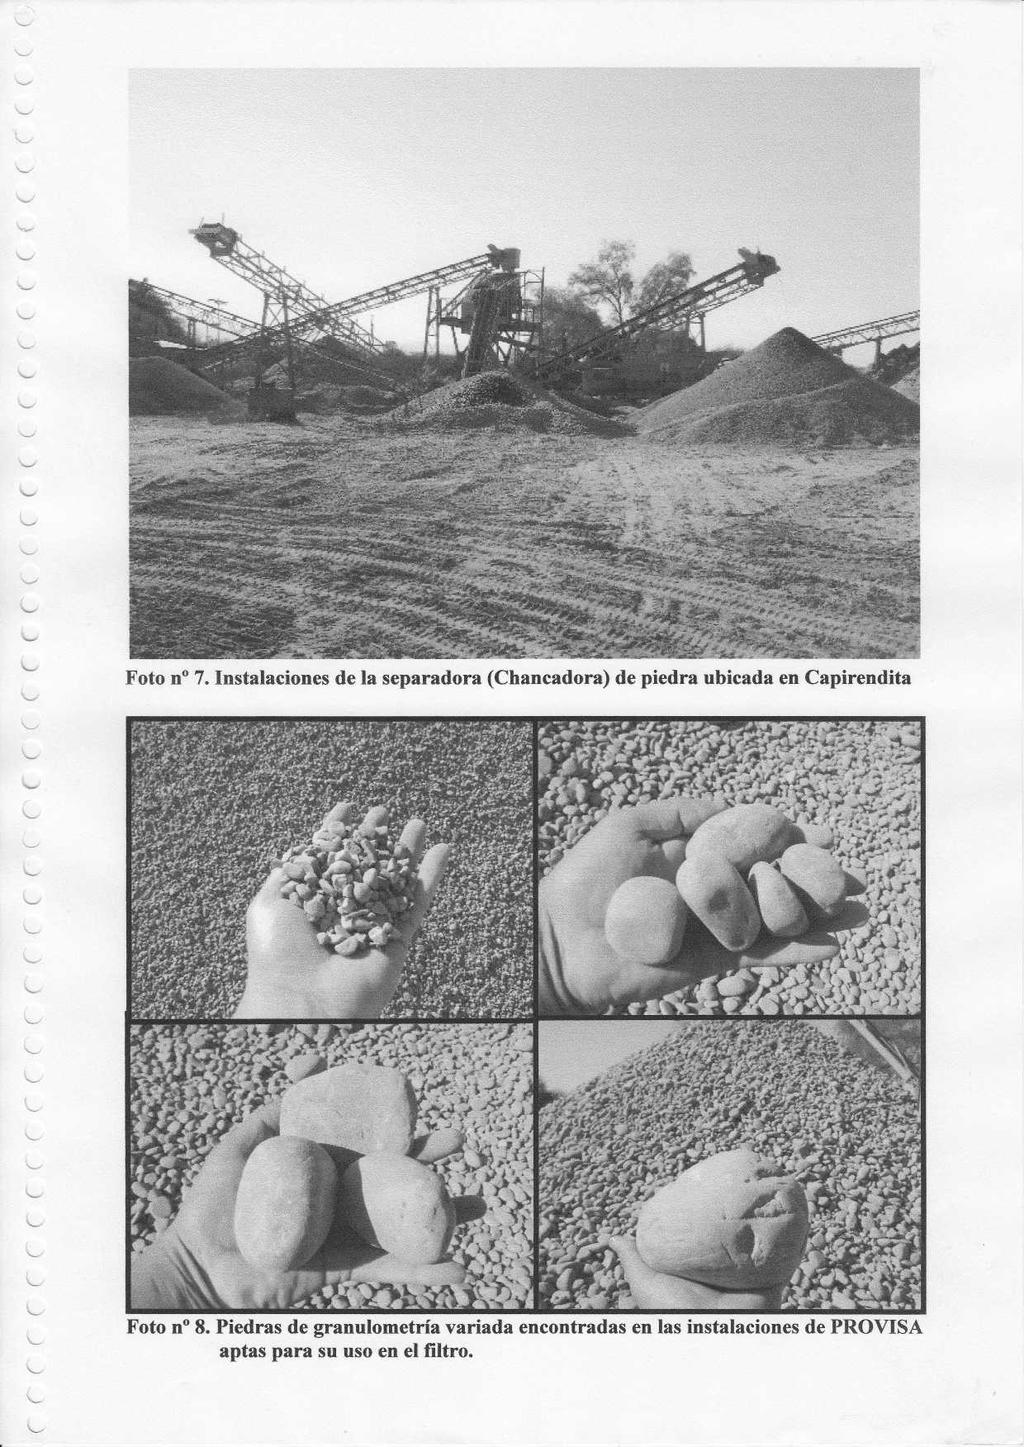 Foto n 7. Instalaciones de la separadora (Chancadora) de piedra ubicada en Capirendit a Foto n 8.